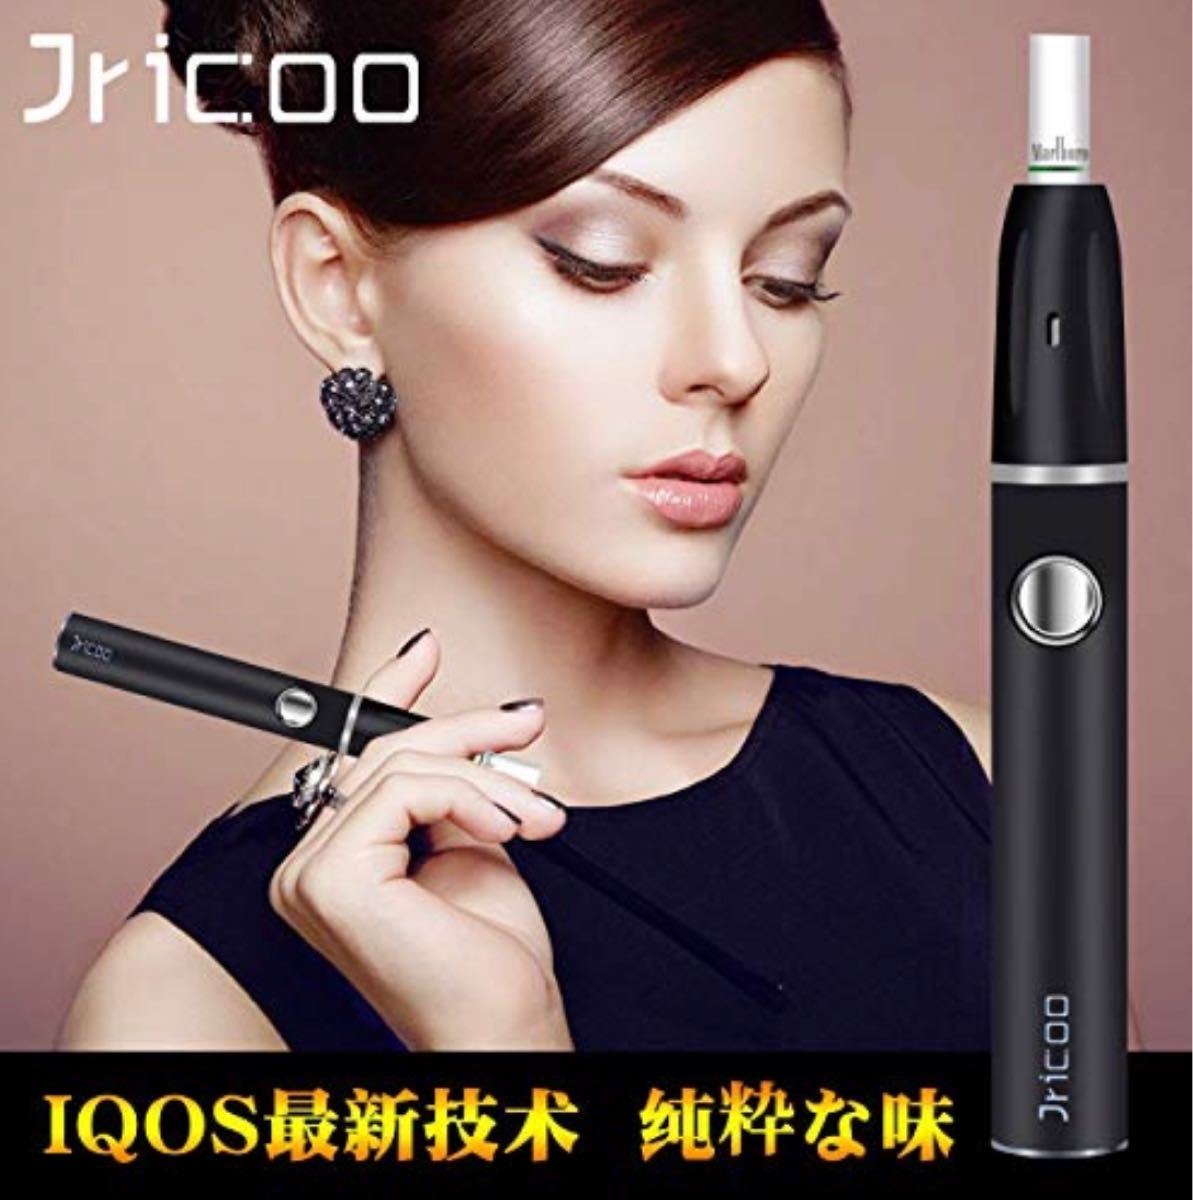 【新品】IQOS アイコス 互換機 Jricoo 加熱式 電子タバコ レッド